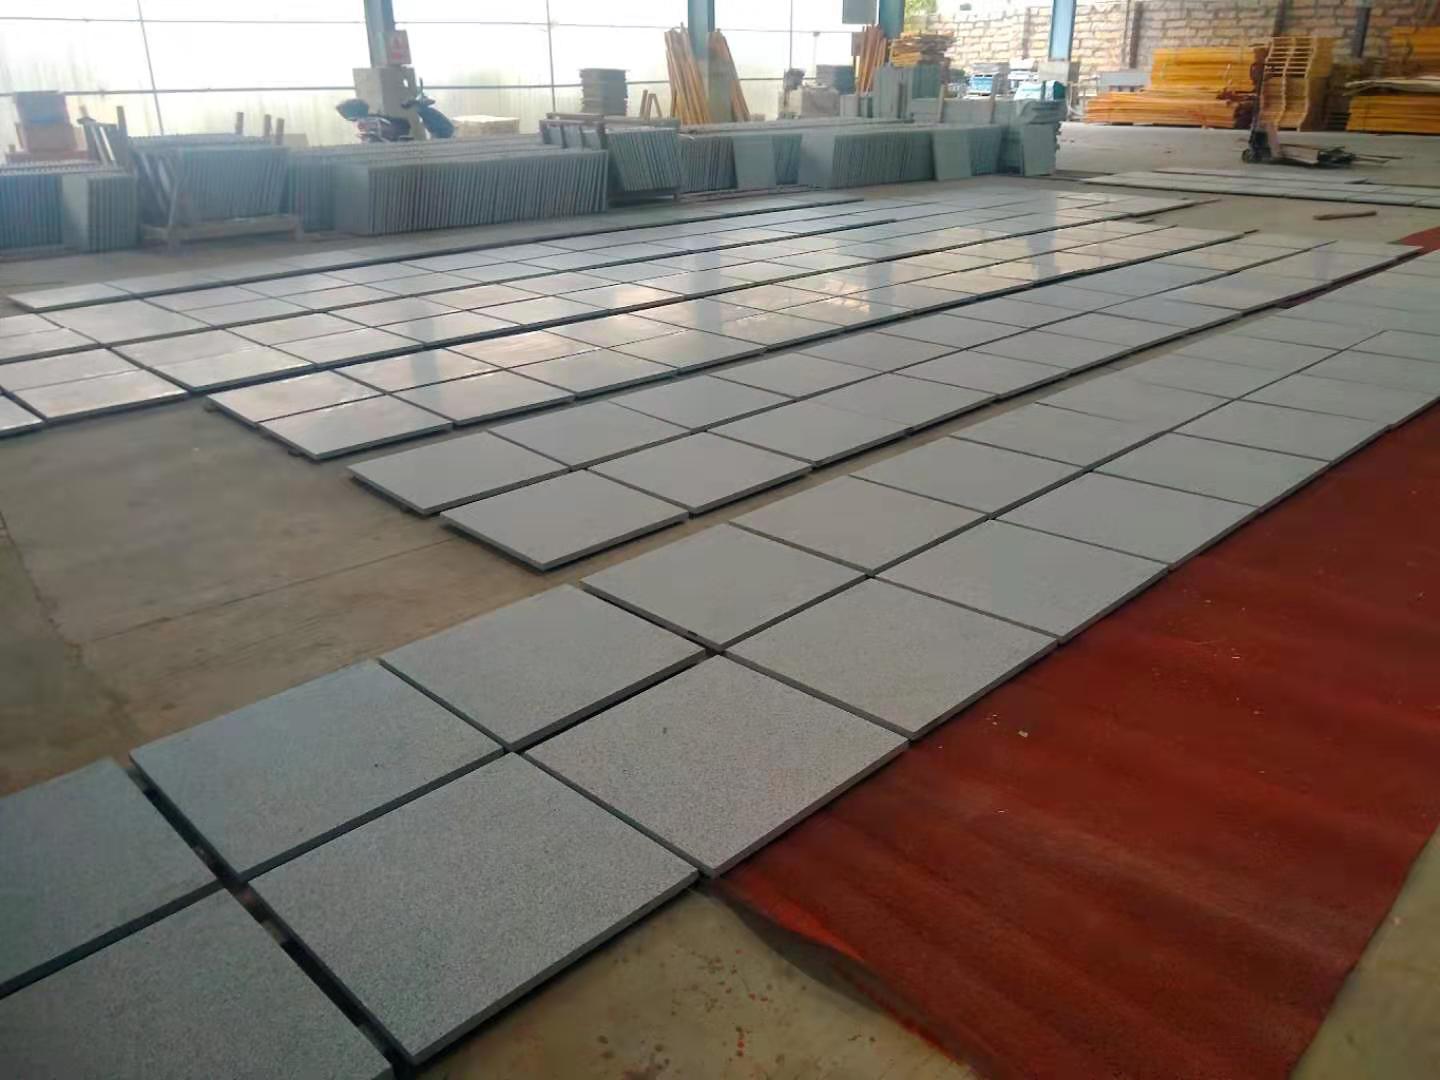 Honed Granite Floor tile